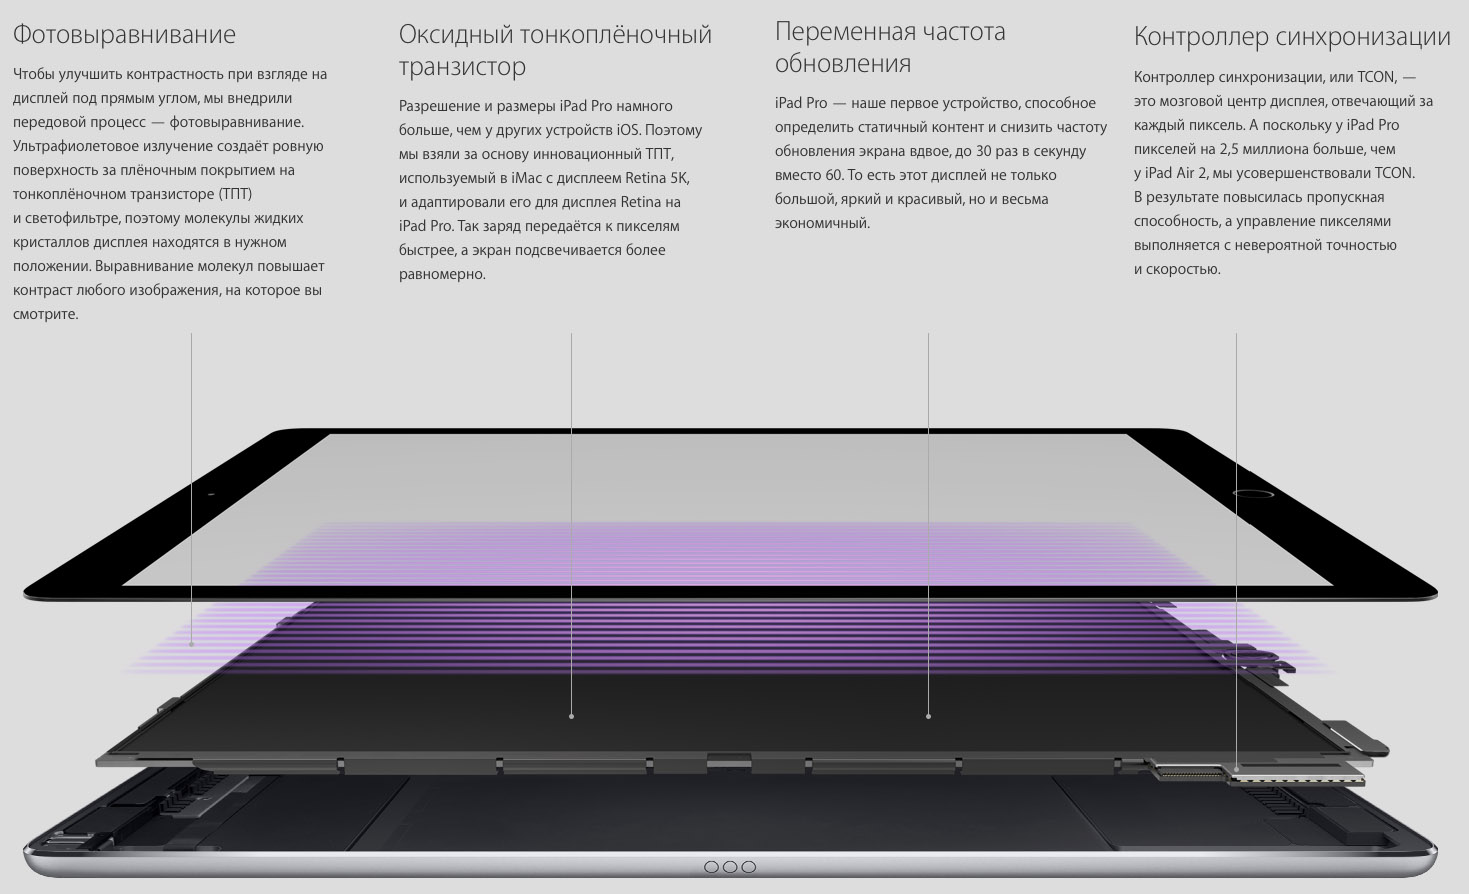 Подробные характеристики дисплея в Apple iPad Pro